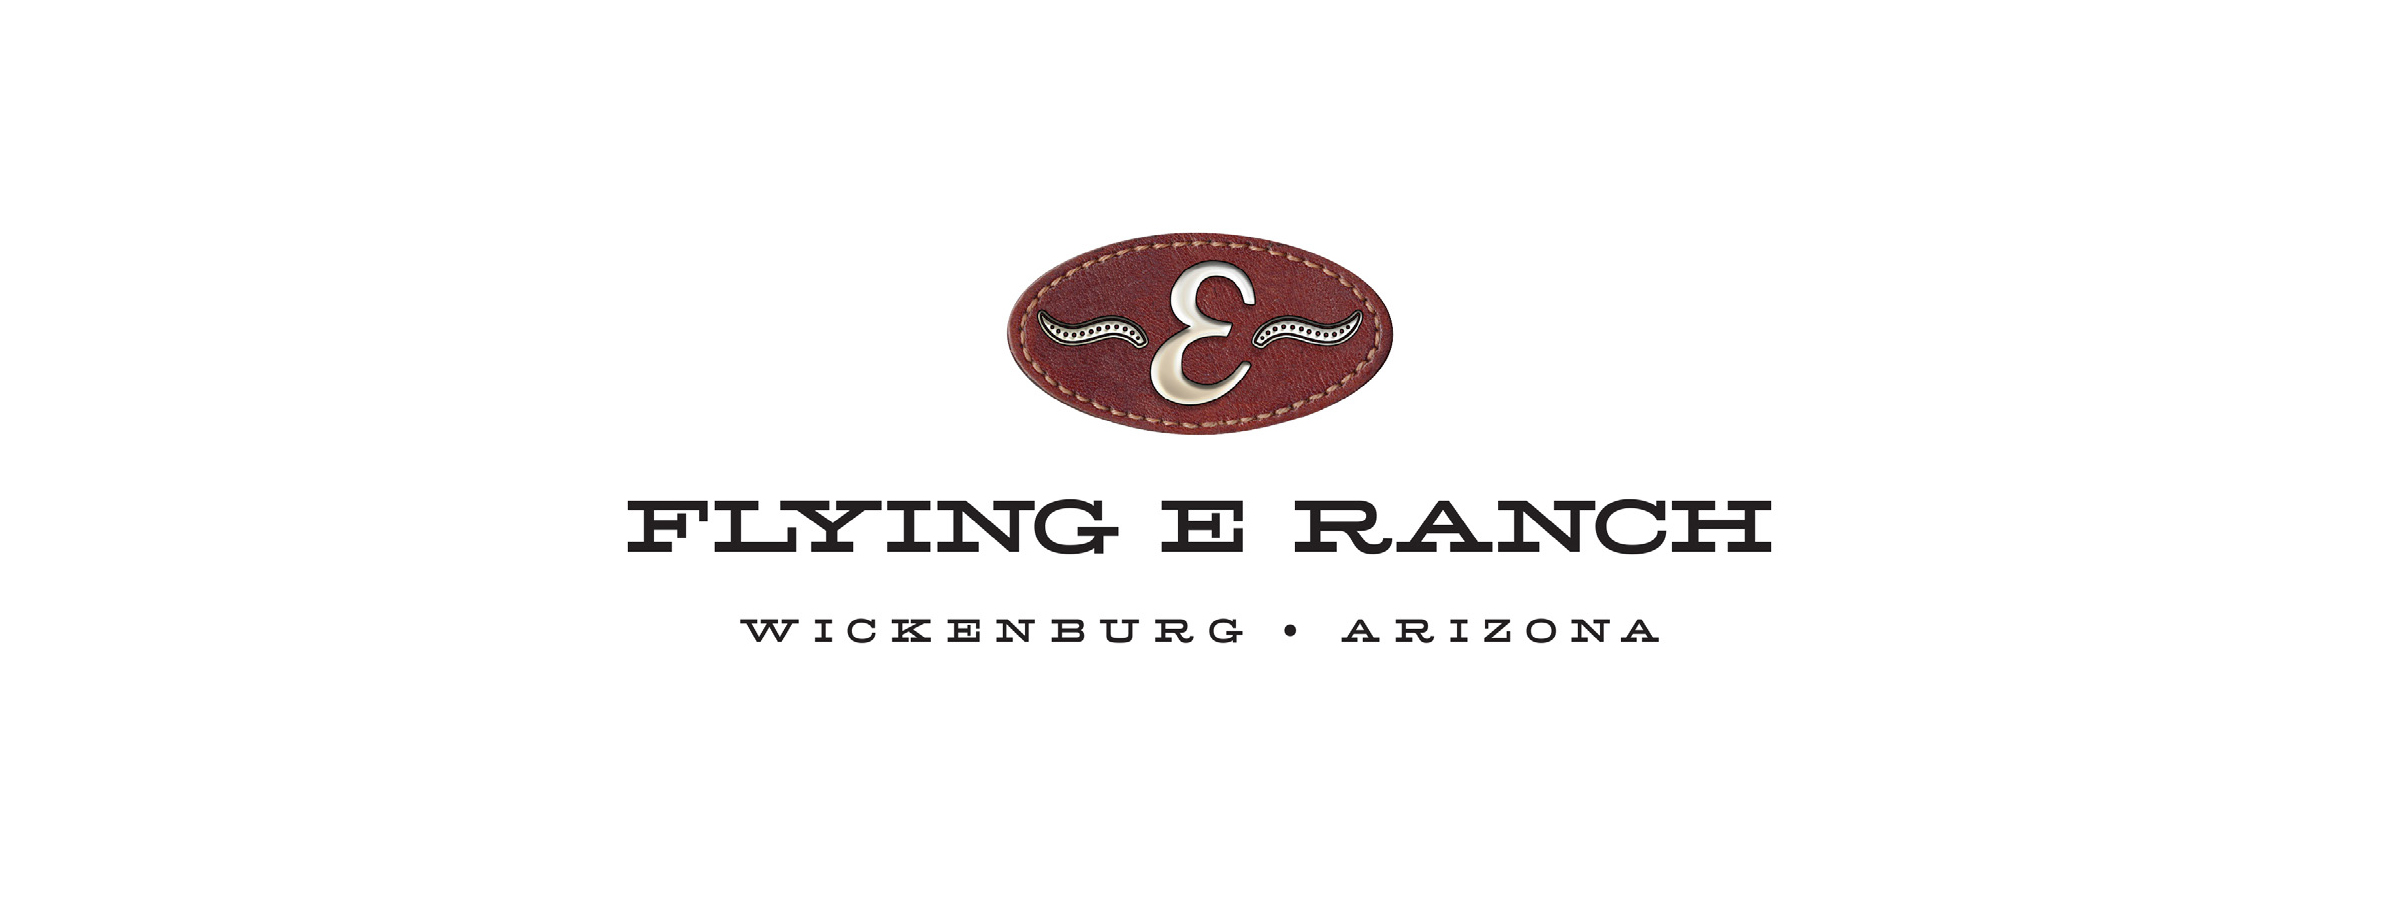 Flying E logo.jpg